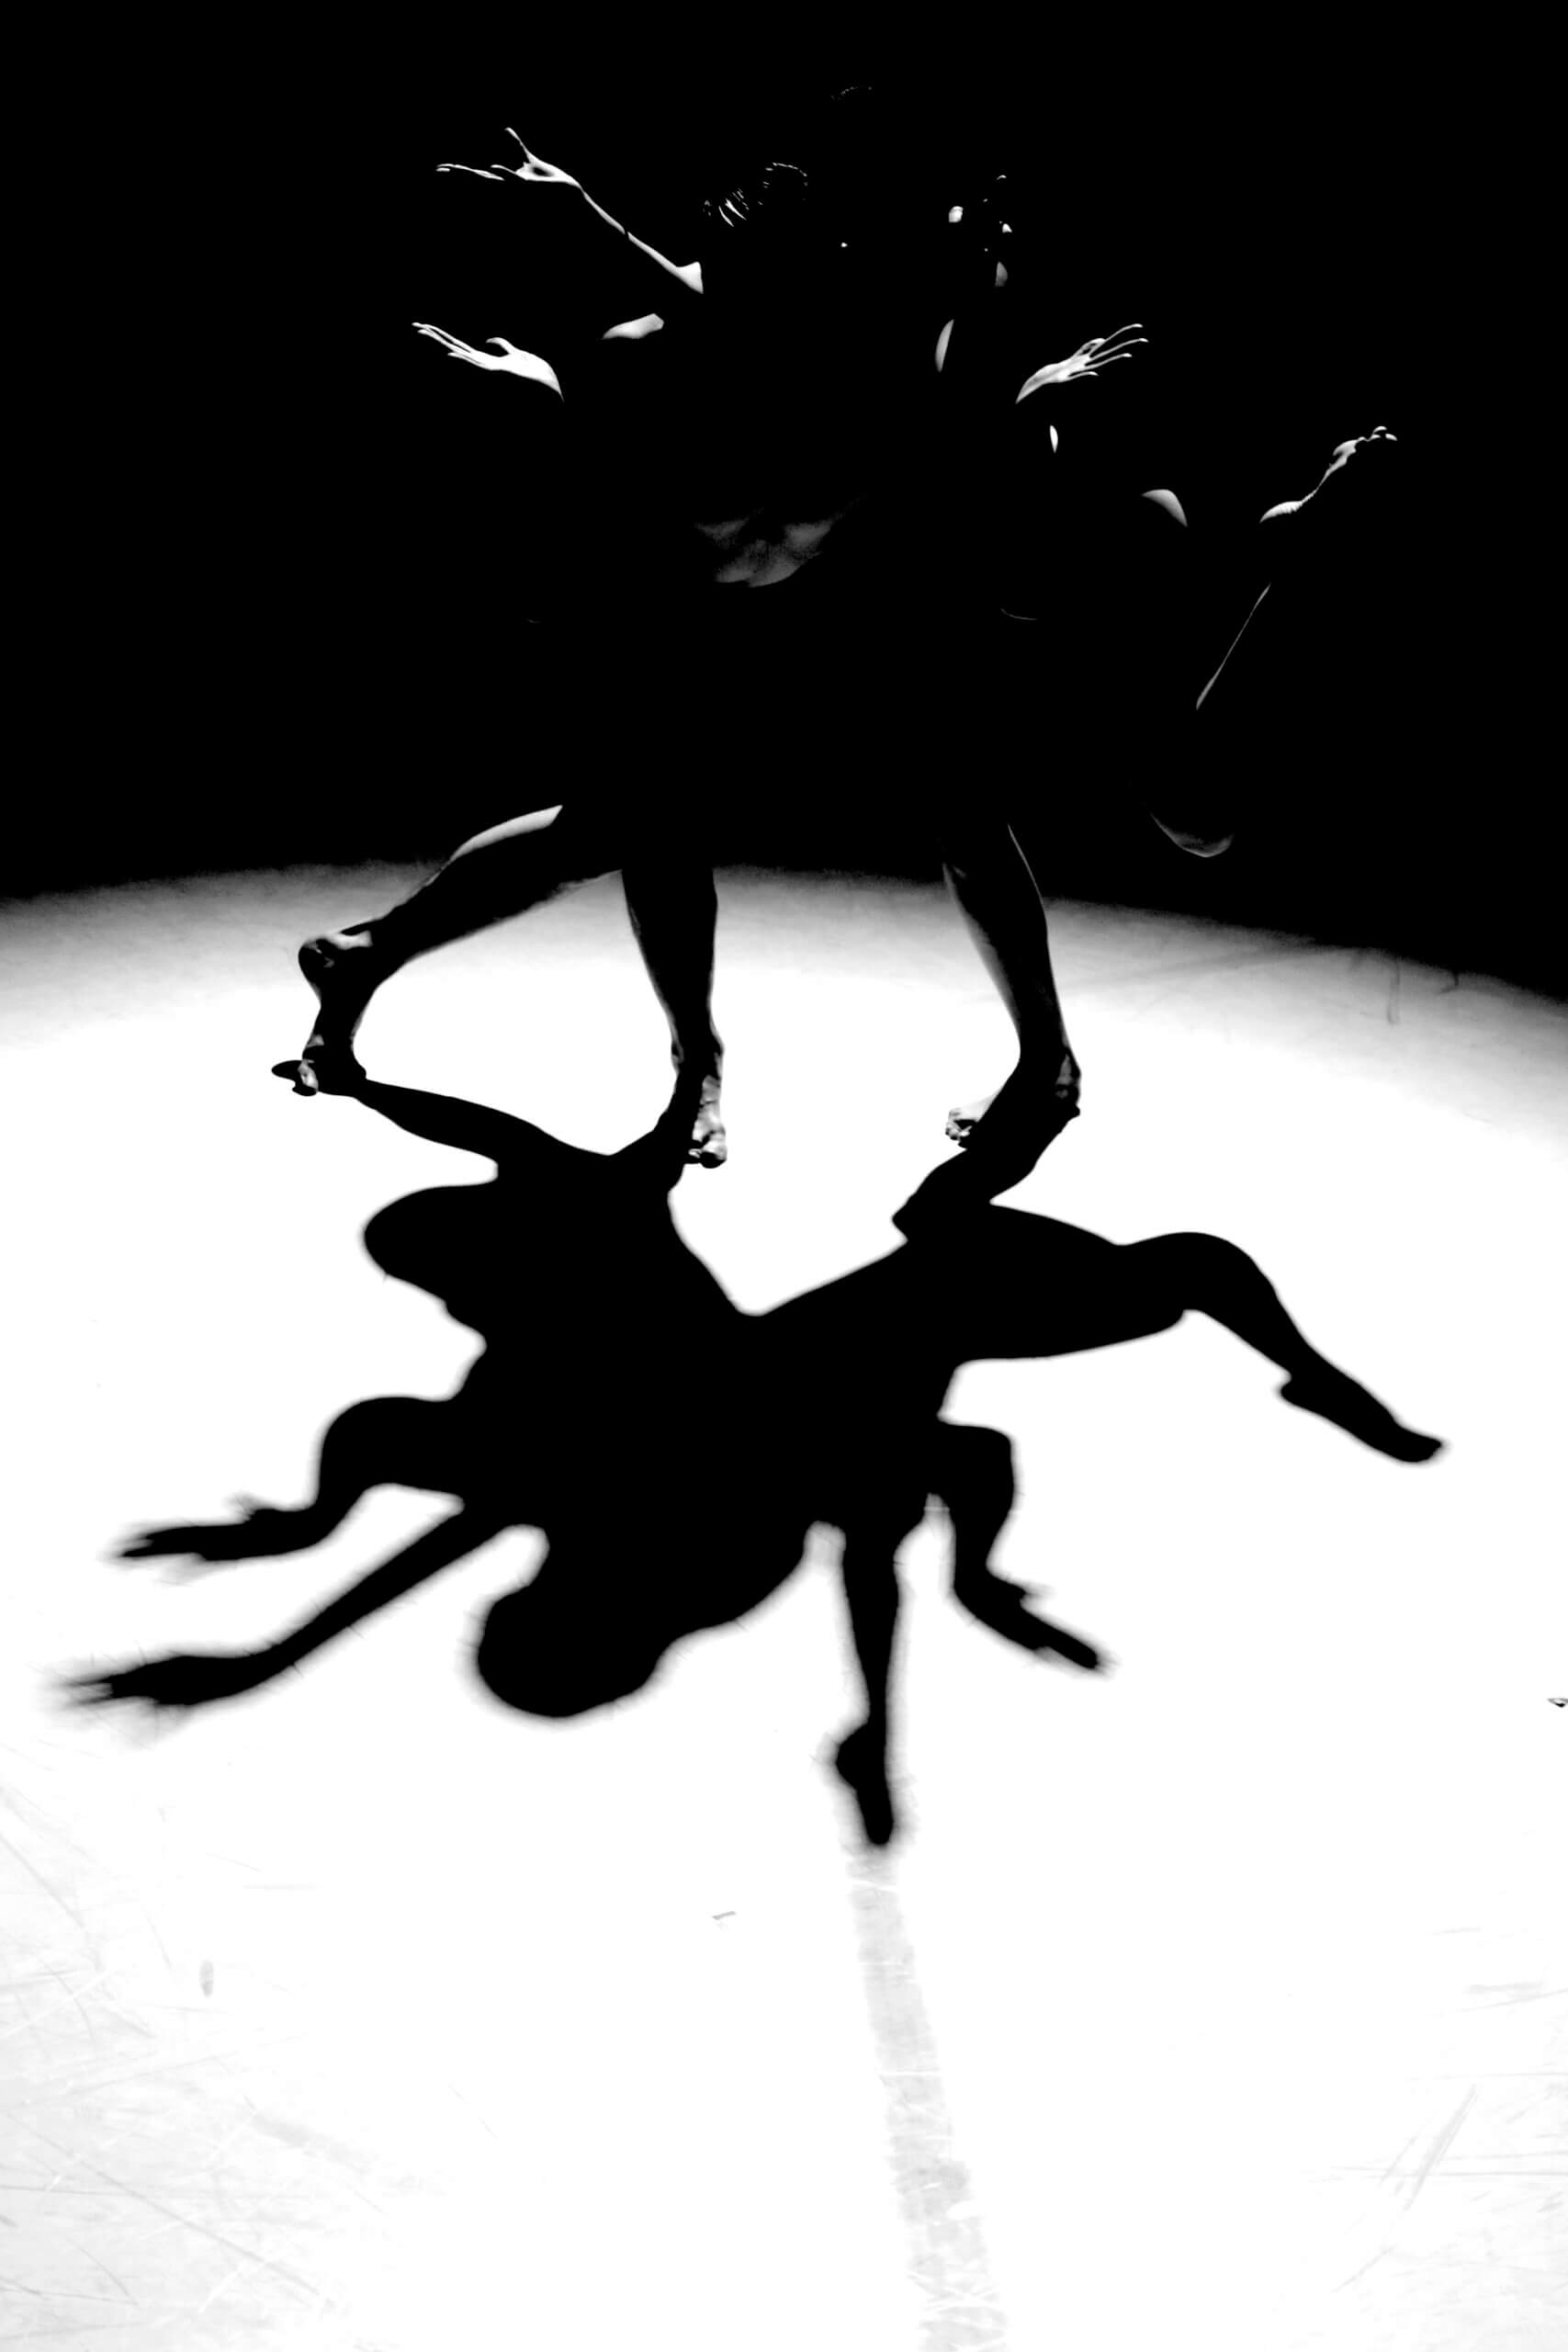 Zdjęcie Illumination. Zdjęcie czarno-białe. Na zdjęciu znajdują się dwie osoby, które wyginają się w różne strony.